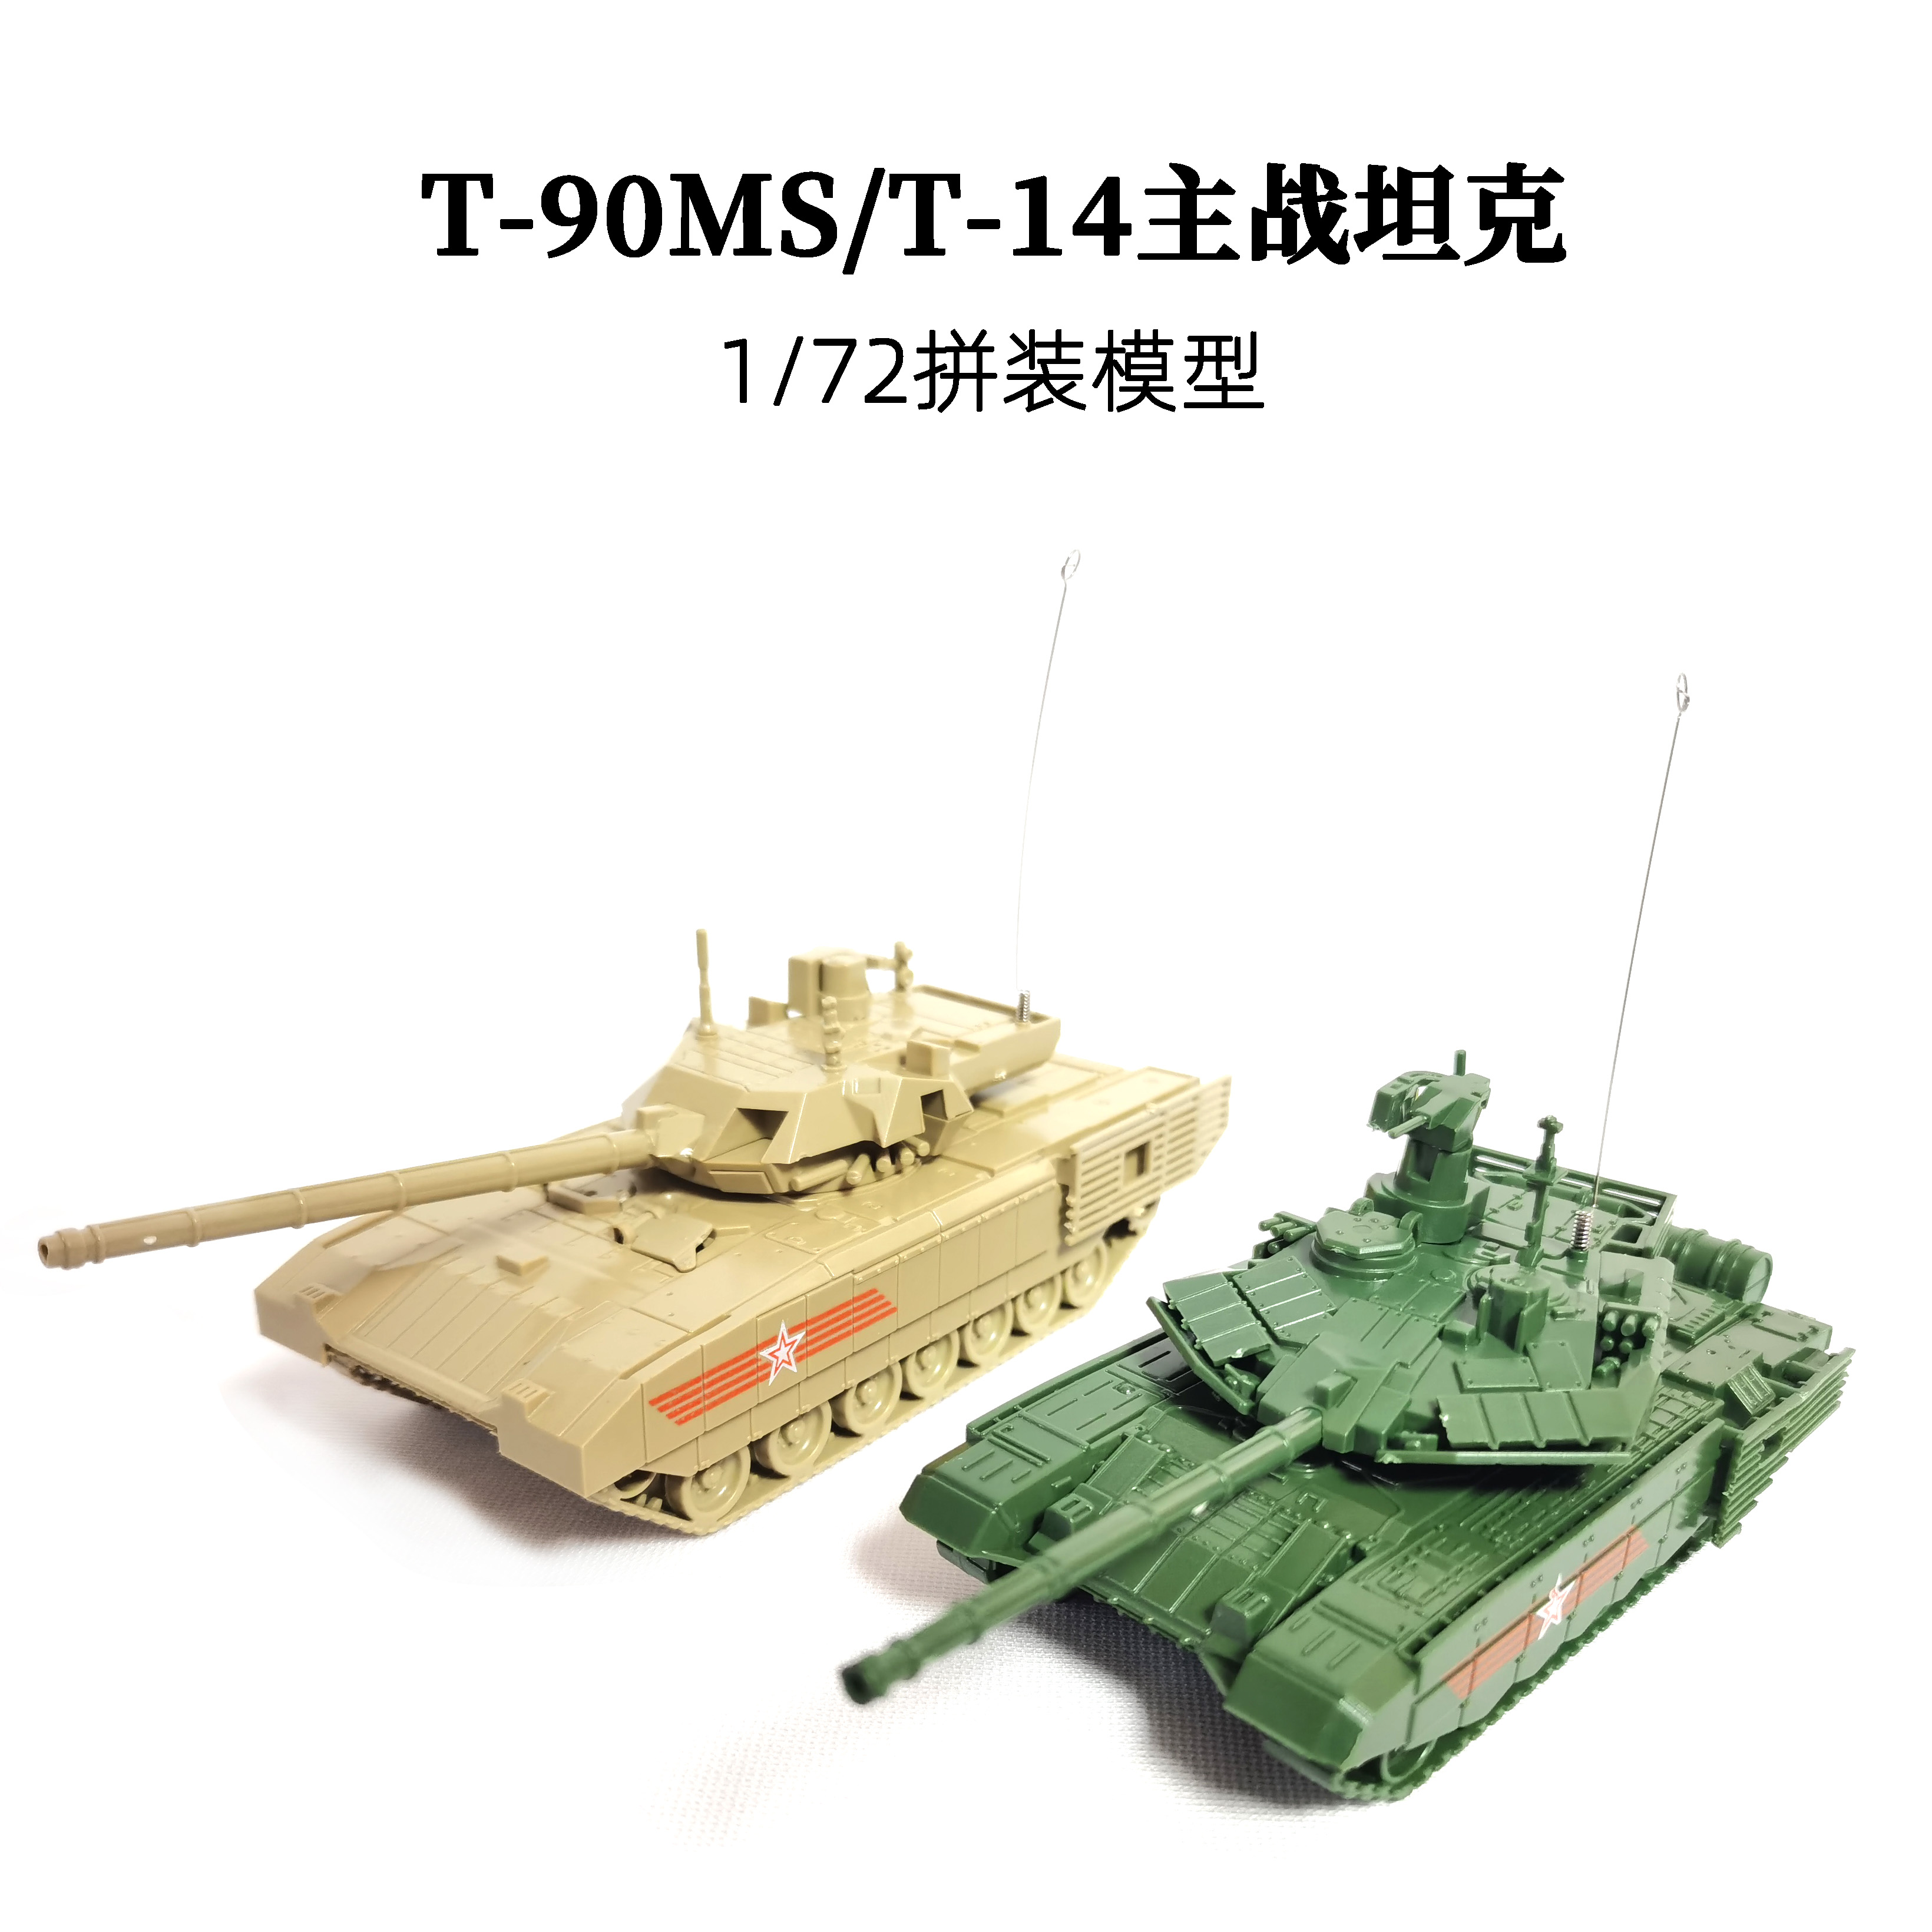 1/72俄罗斯T-90MS主战坦克正版4D拼装模型T-14阿玛塔坦克塑料玩具